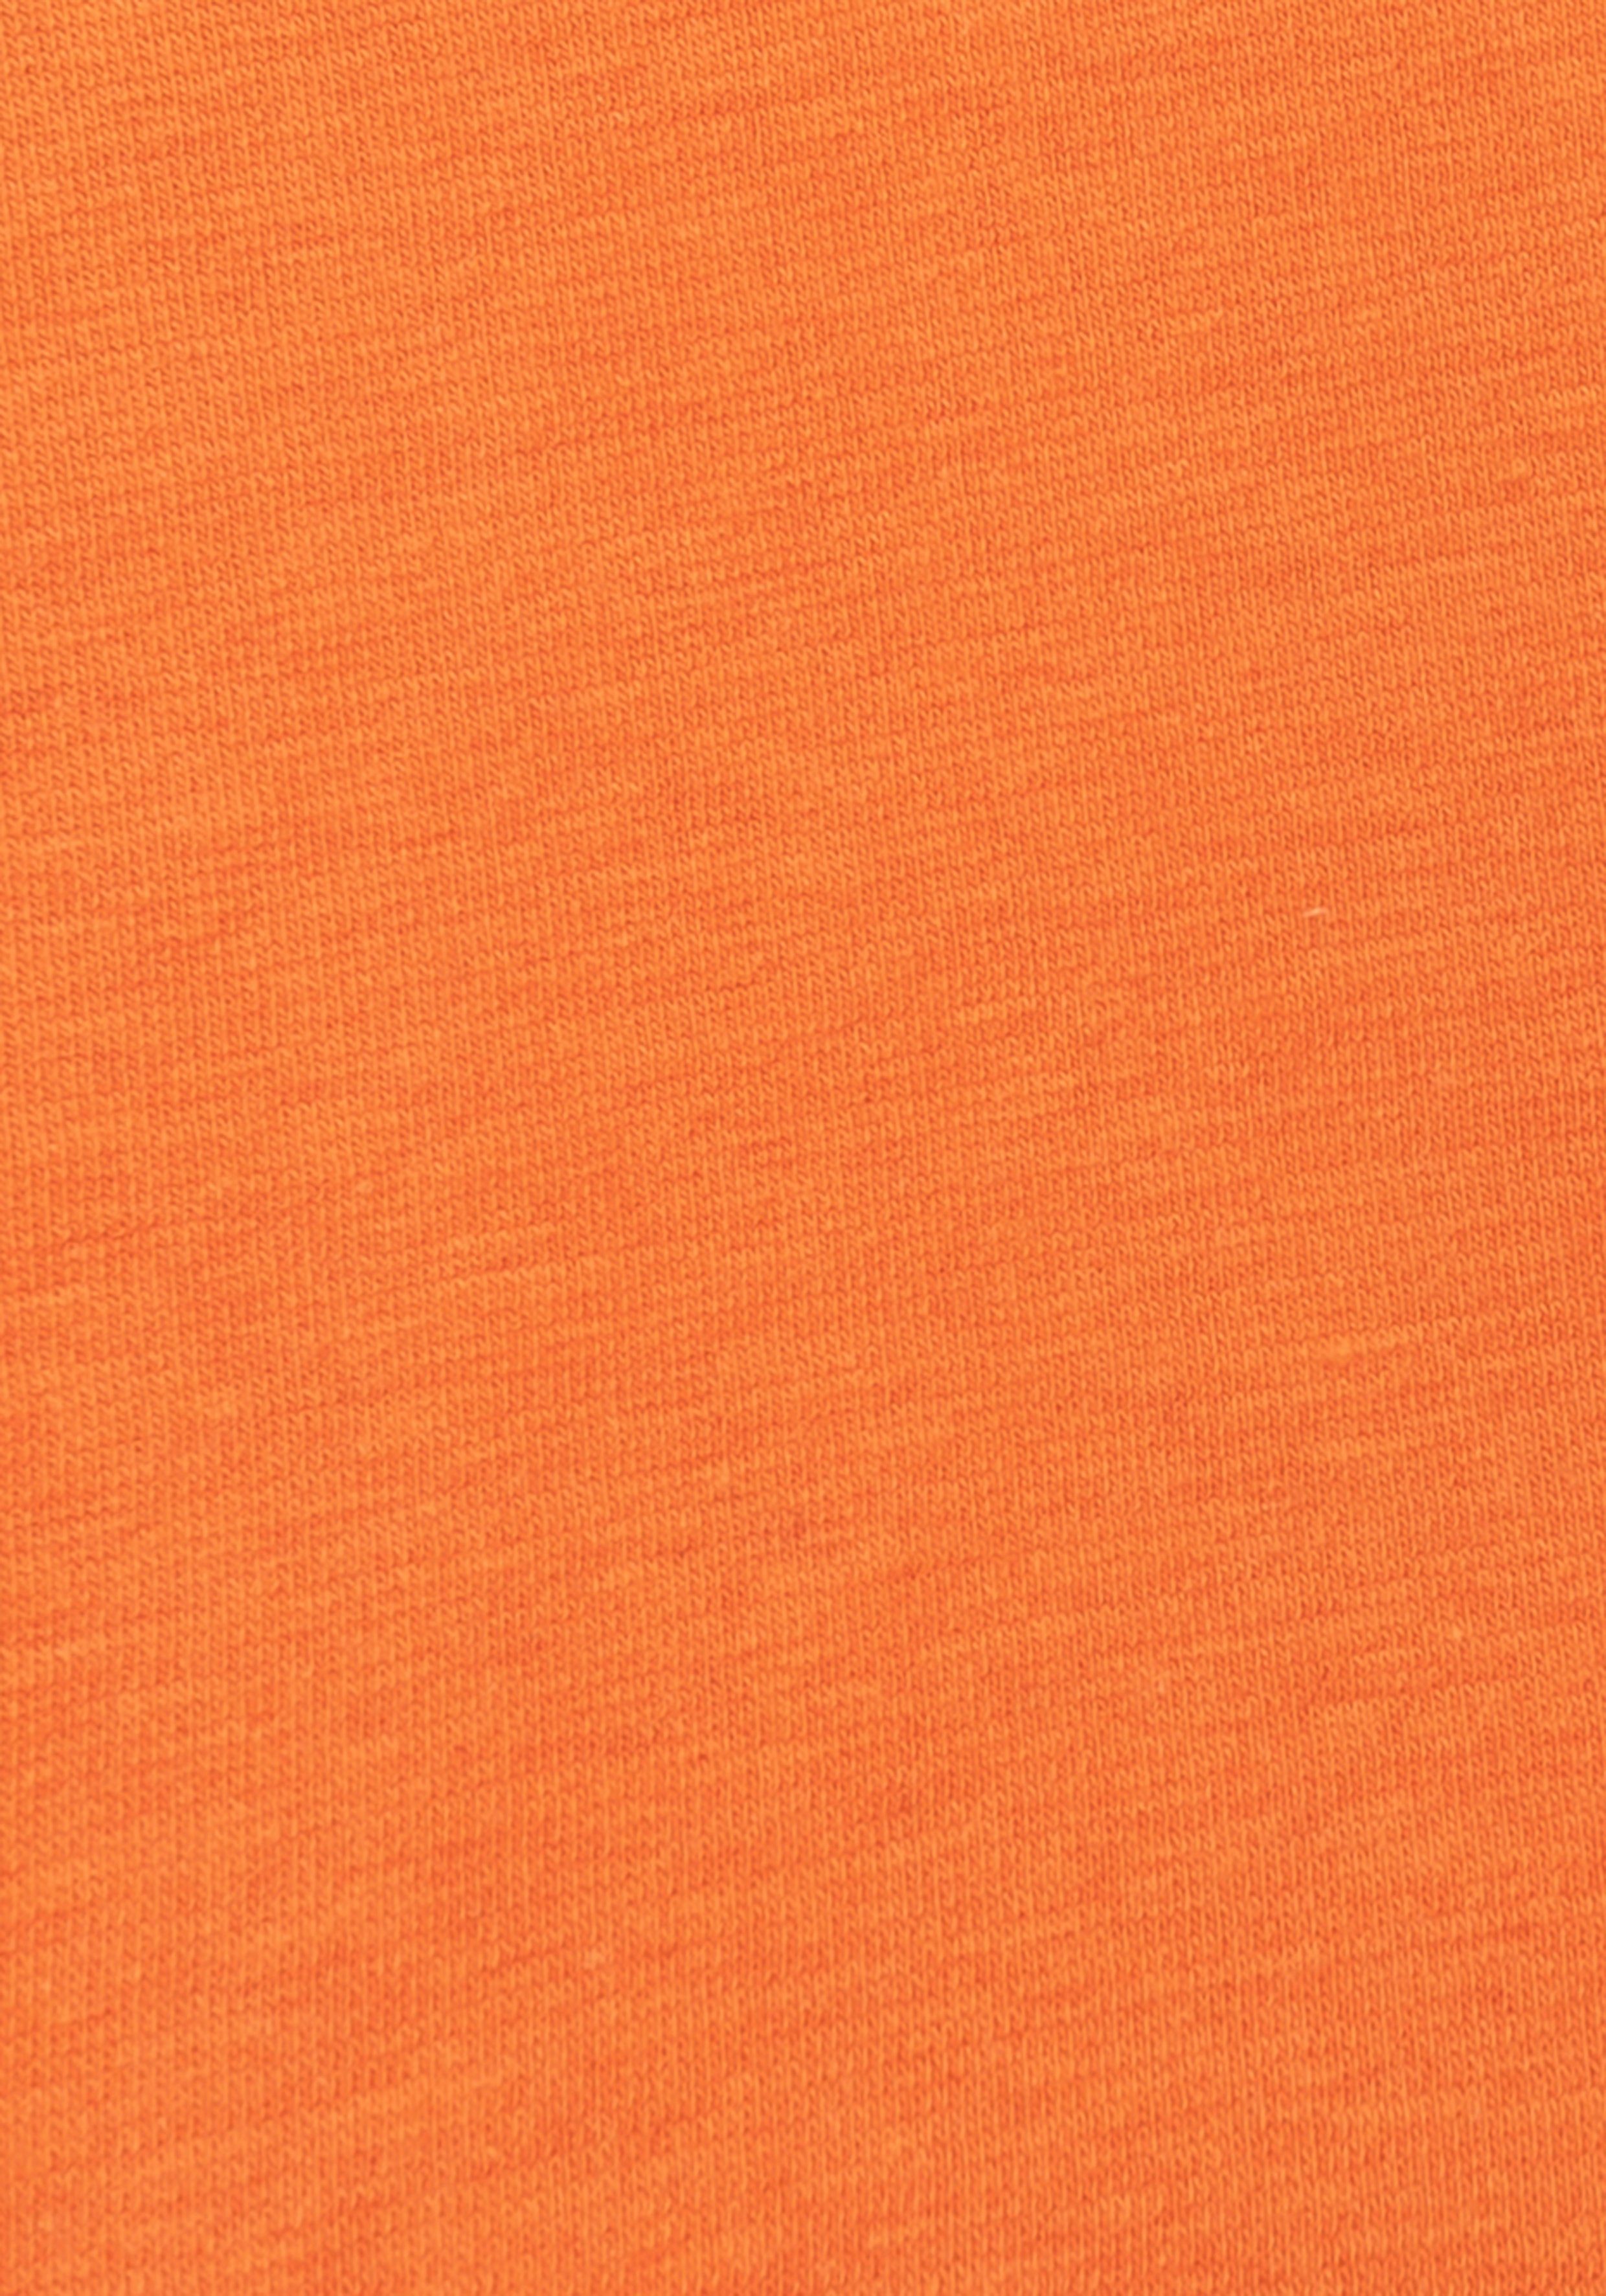 H.I.S Boxer (Packung, Auftritt 4-St) orange-marine, coolem Colorblocking einen marine-orange marine-blau, für mit sportlichen blau-marine